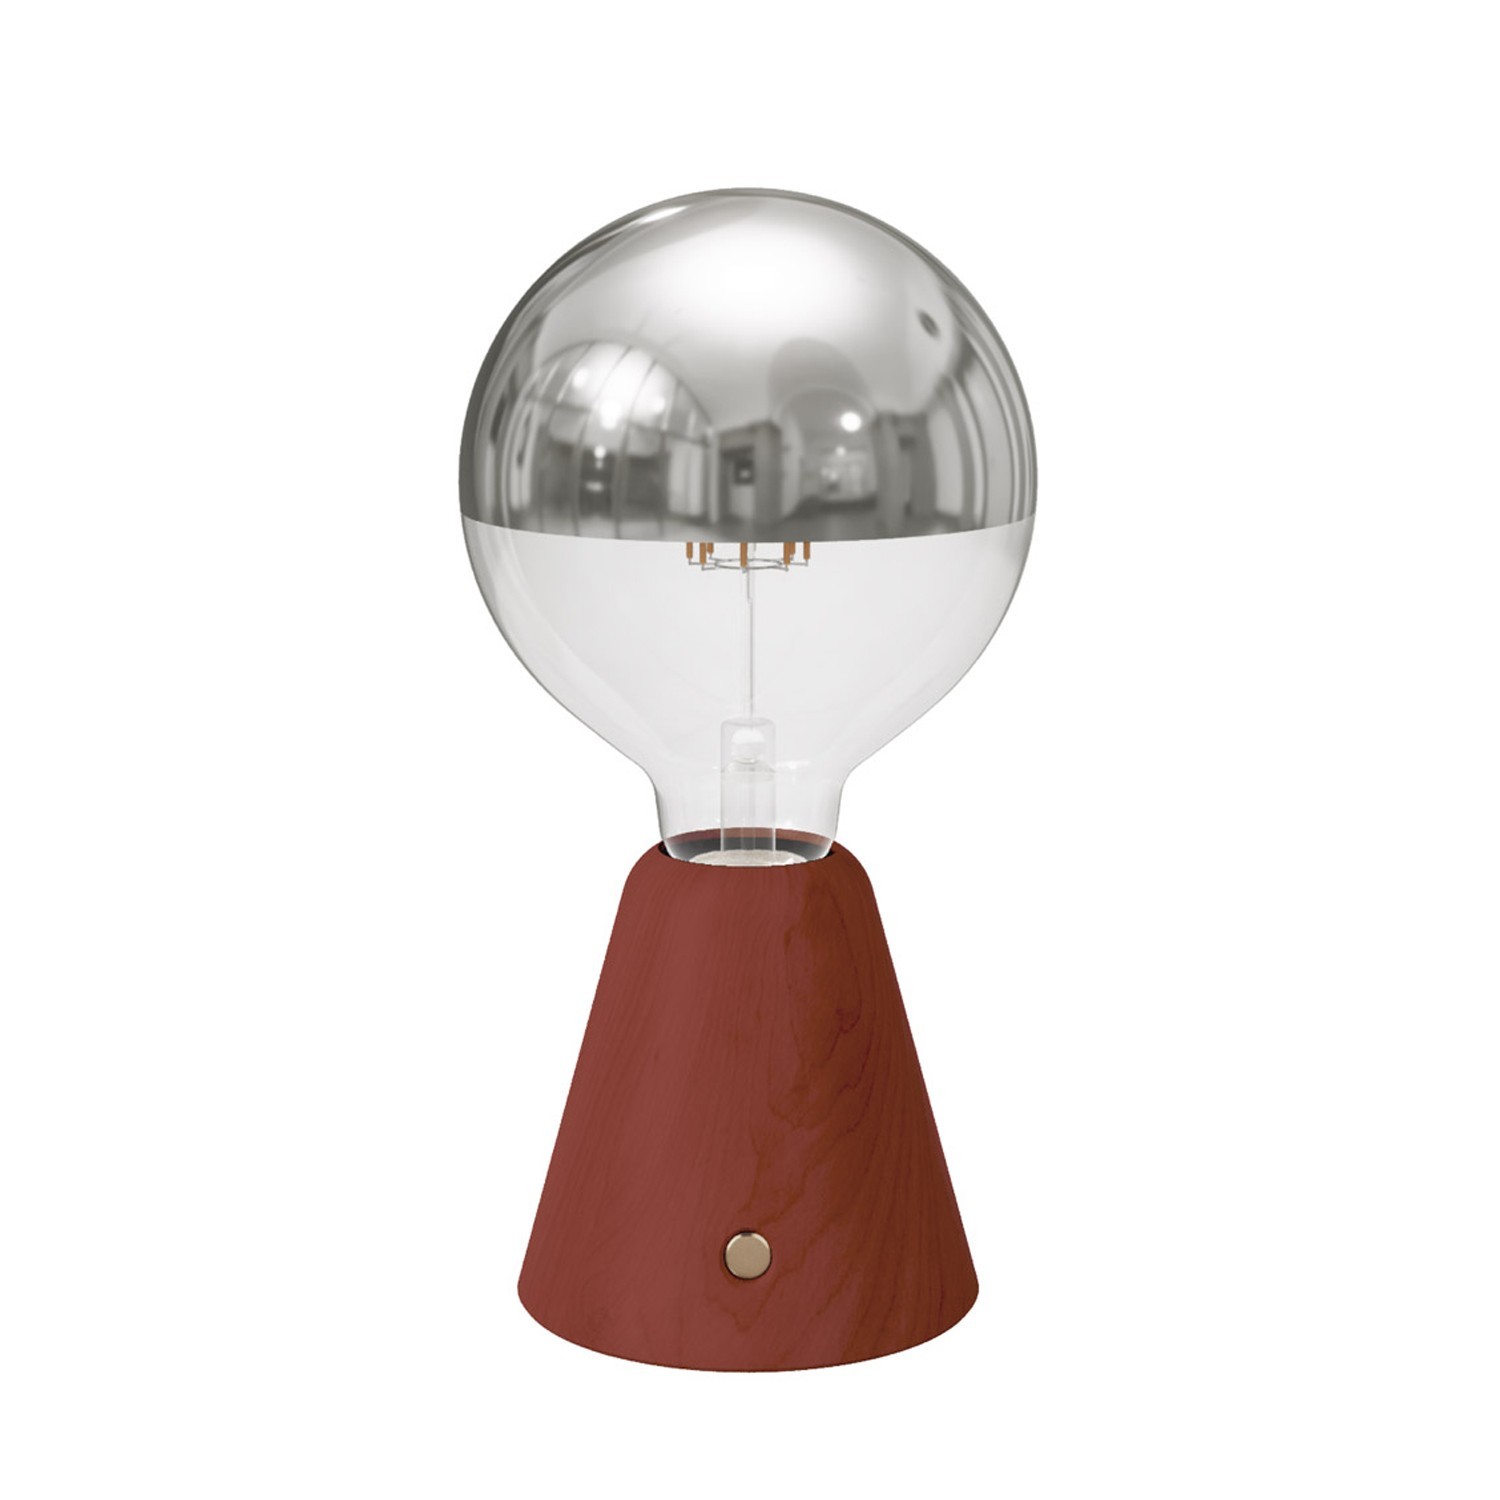 Prijenosna i punjiva LED svjetiljka Cabless01 sa srebrnom polusfernom globus žaruljom